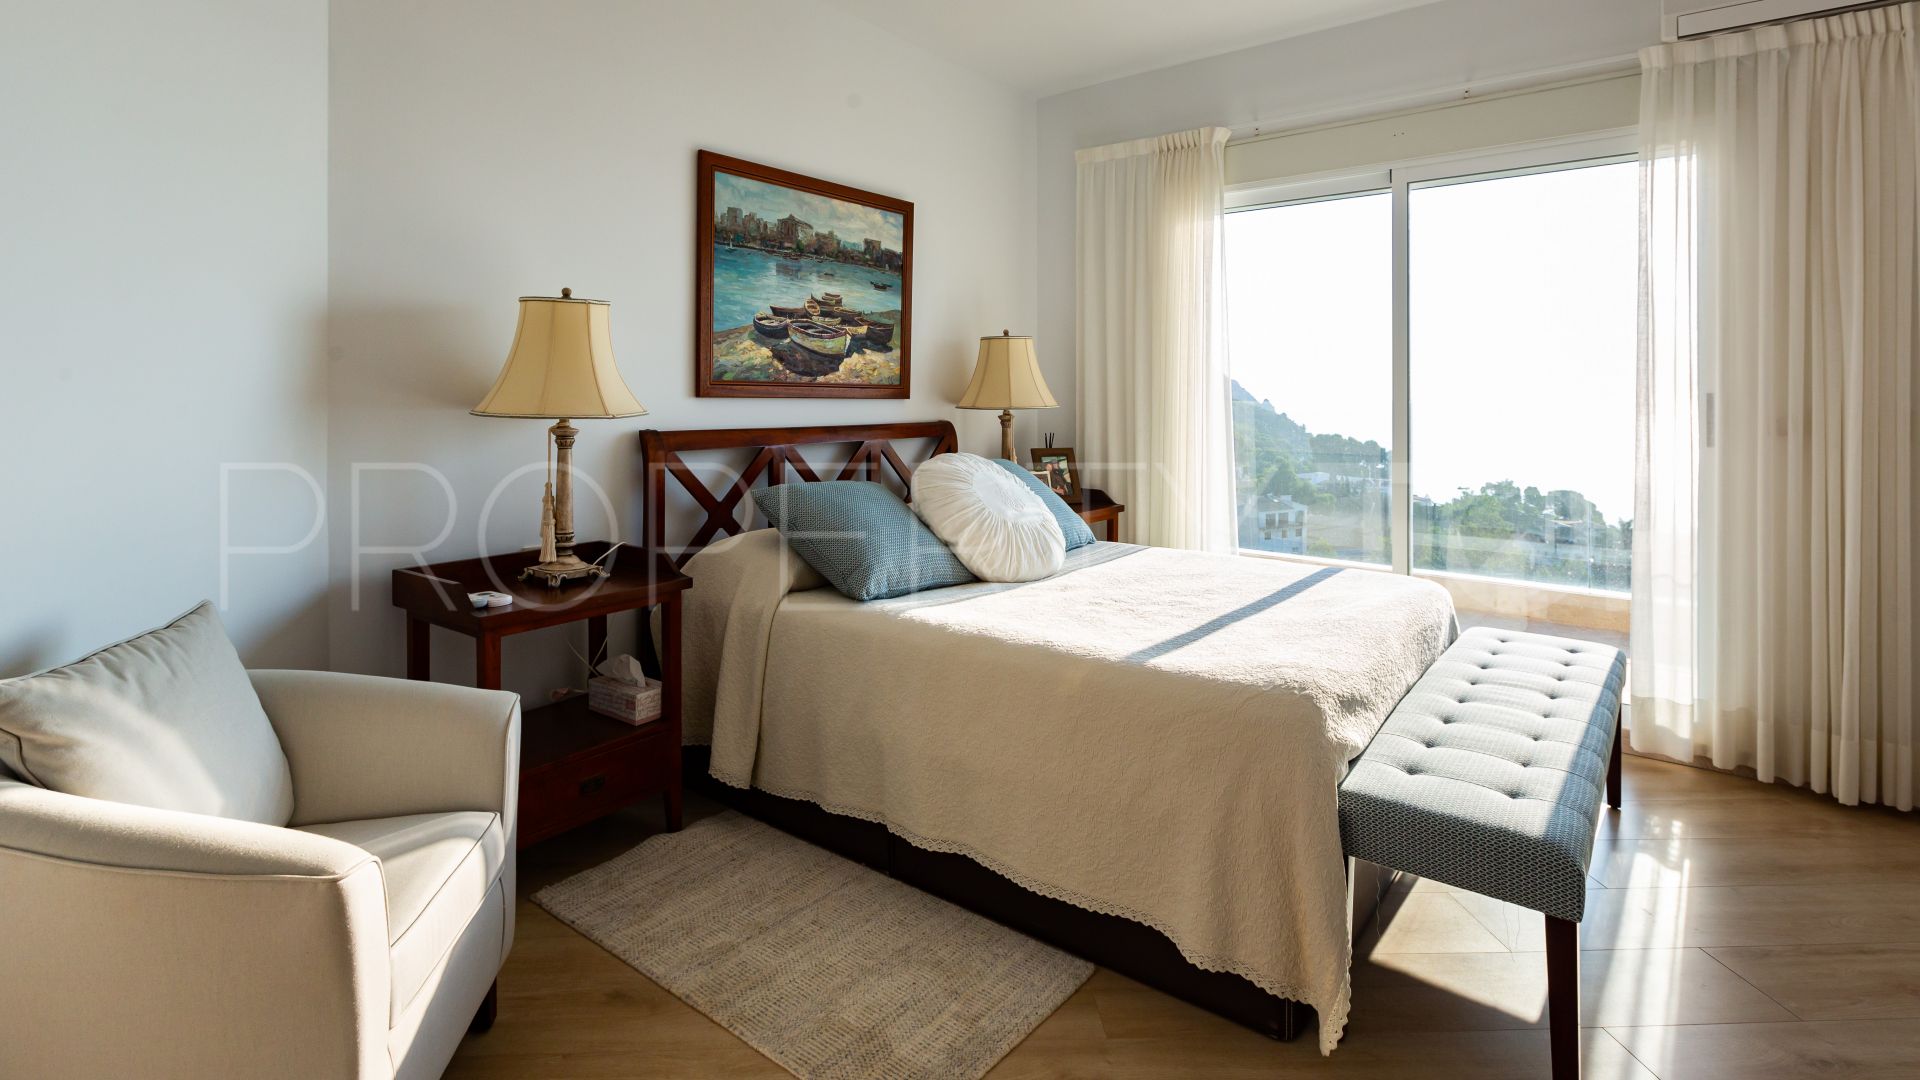 For sale 6 bedrooms villa in La Corona